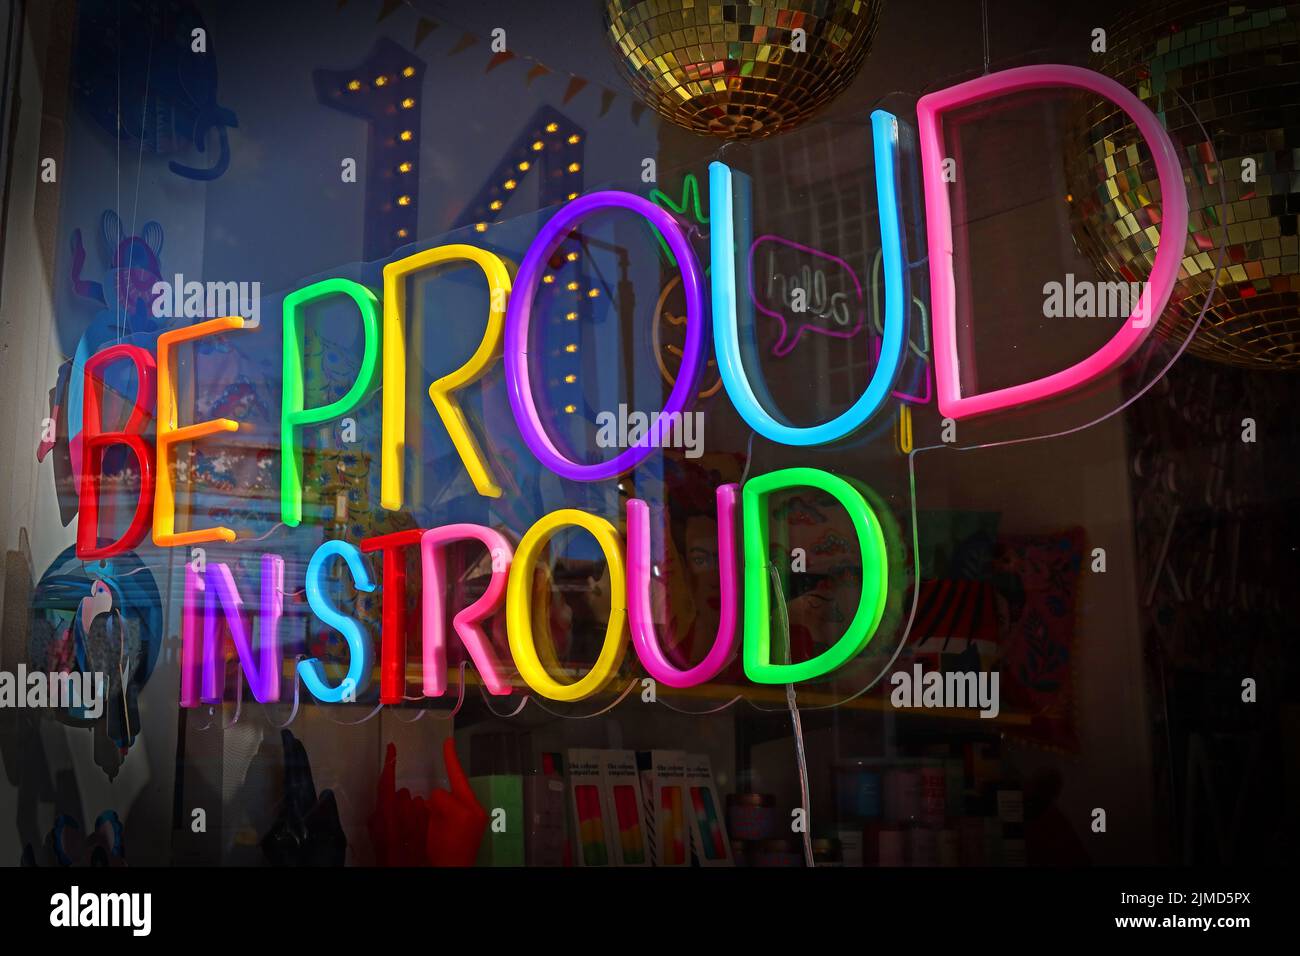 Stolz sein auf Stroud, LGBTQ-Unterstützung im Stadtzentrum von Stroud, Gloucestershire, England, Großbritannien - Neonschild Stockfoto